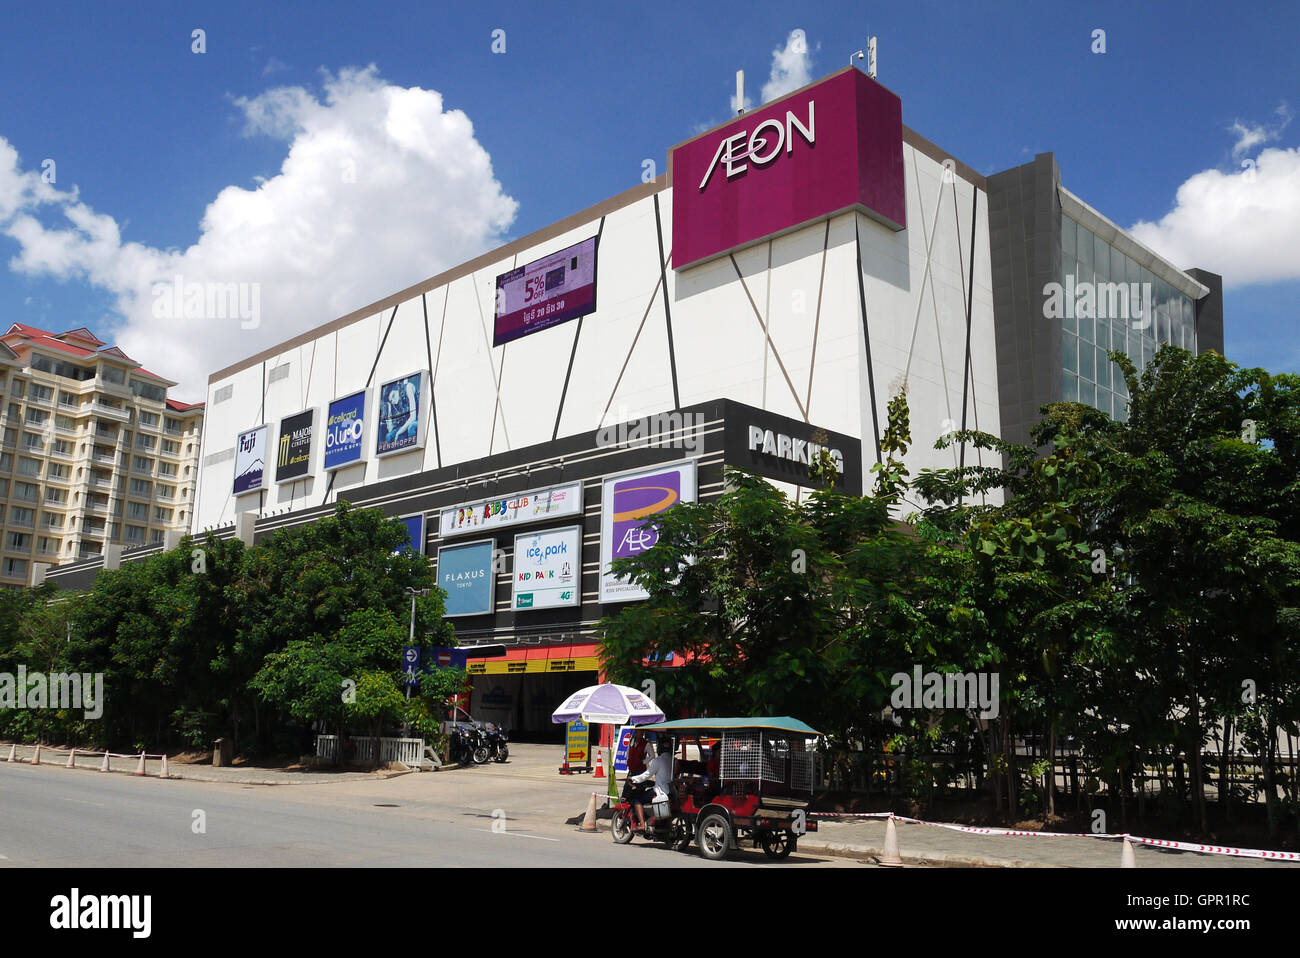 Aeon Shopping Mall, Phnom Penh, Cambodia Stock Photo